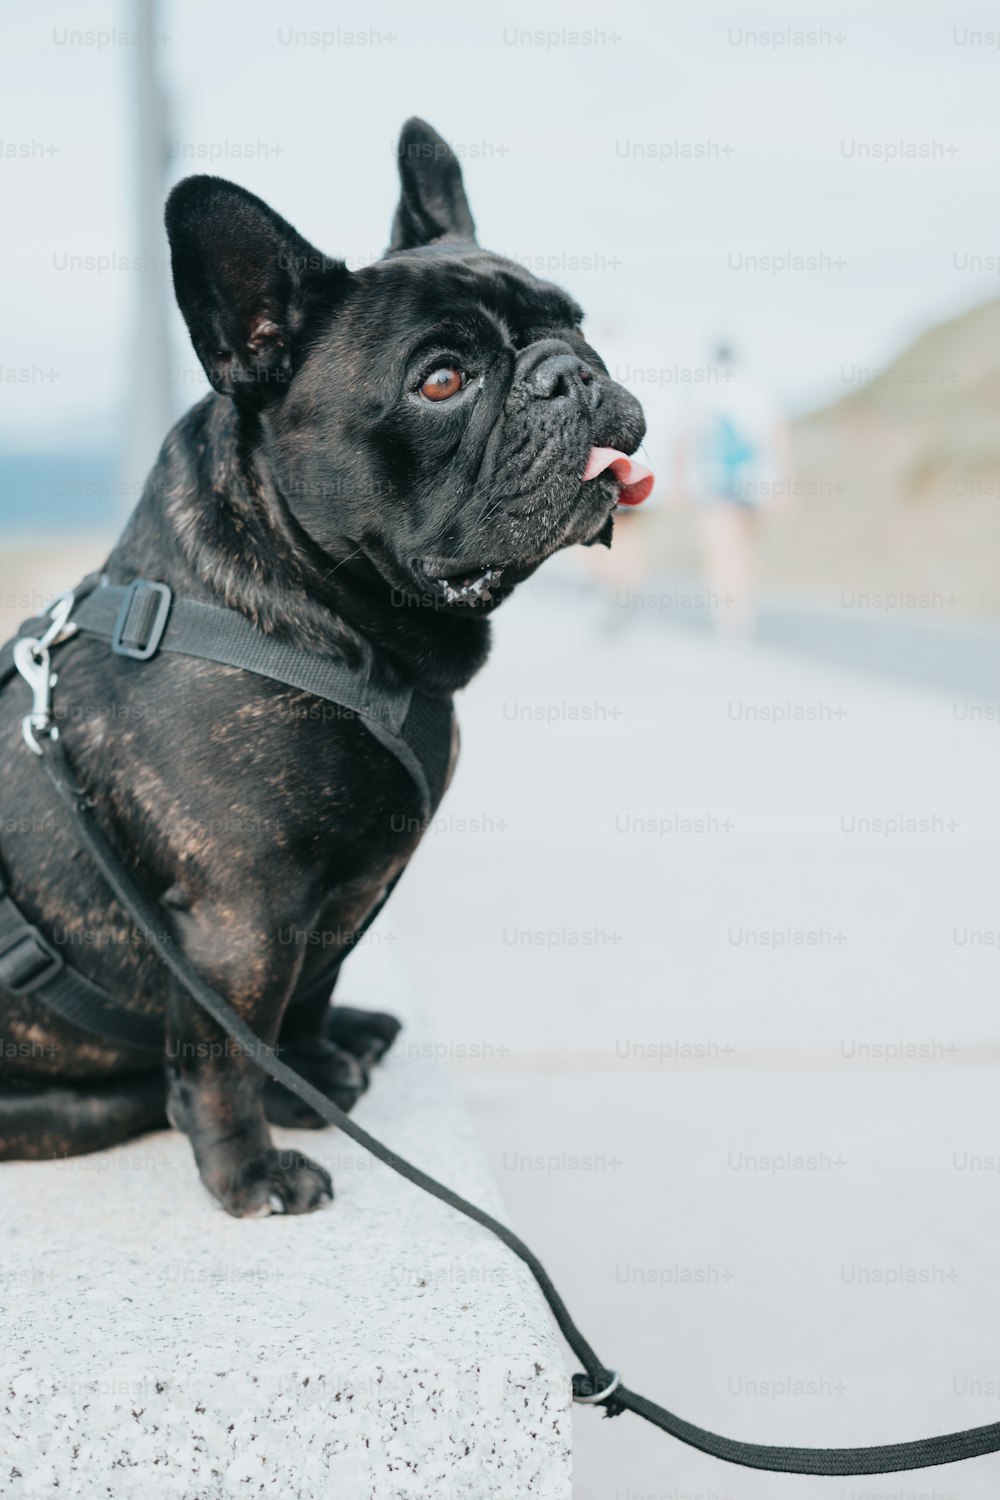 목줄이 달린 검은 개가 시멘트 블록 위에 앉아 있다